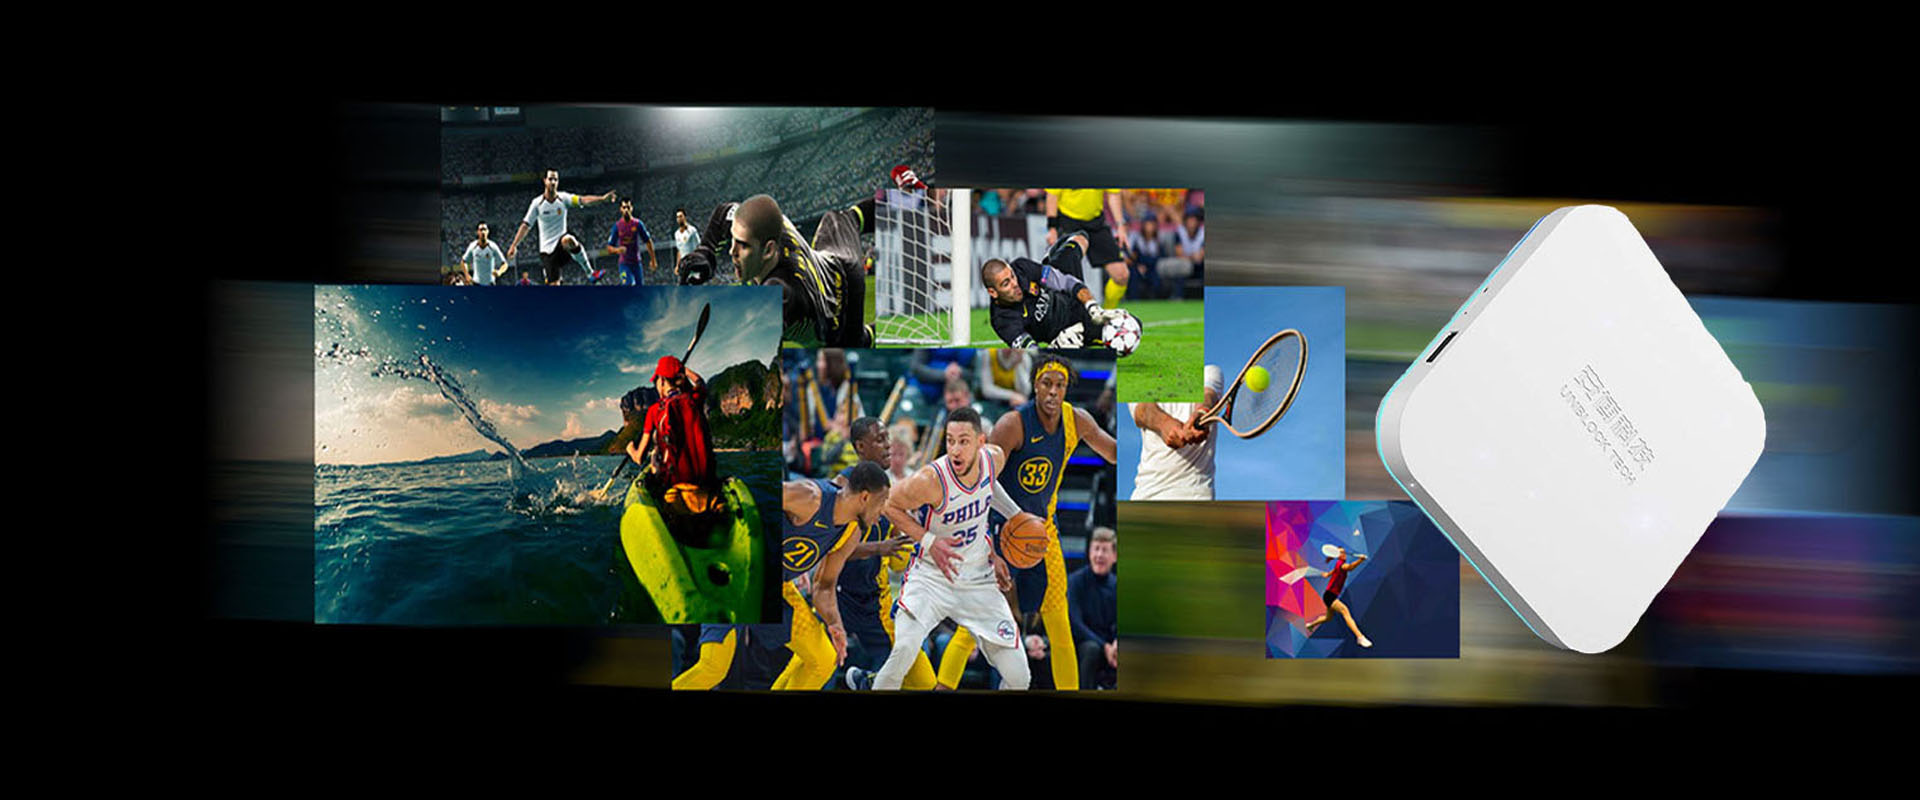 UNBLOCK TECH UBOX8 — спортивная телевизионная приставка, созданная специально для любителей спорта